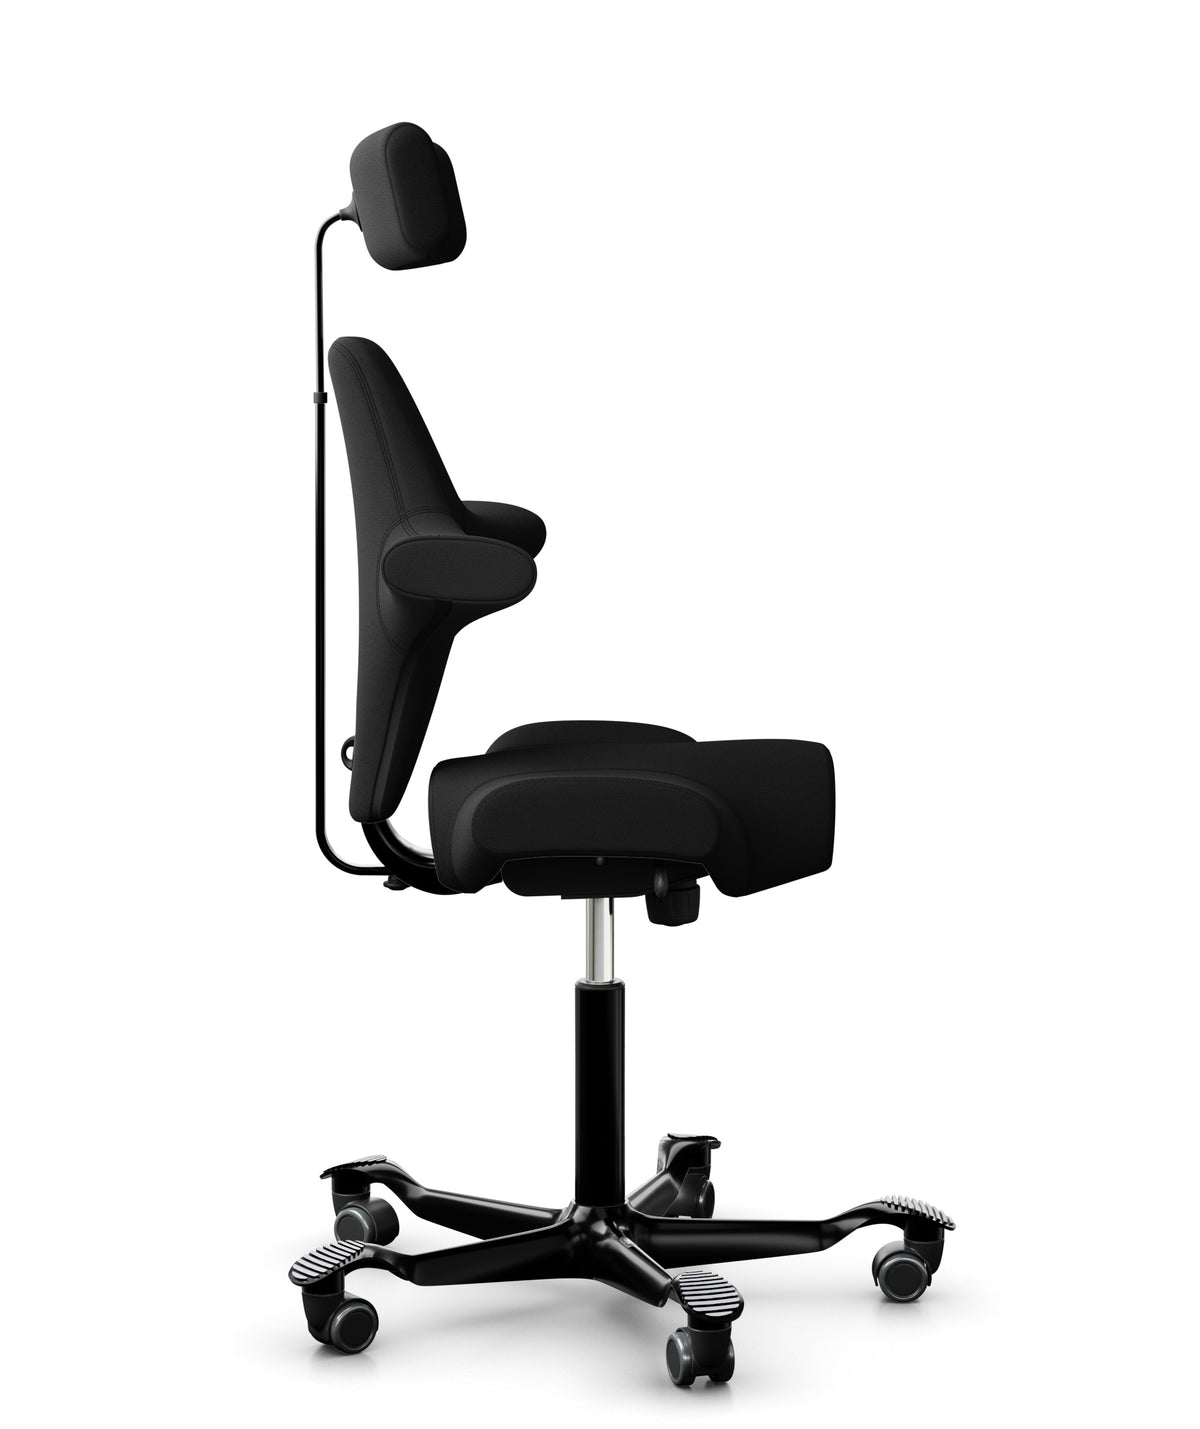 HAG Capisco 8107 Office Chair with Headrest